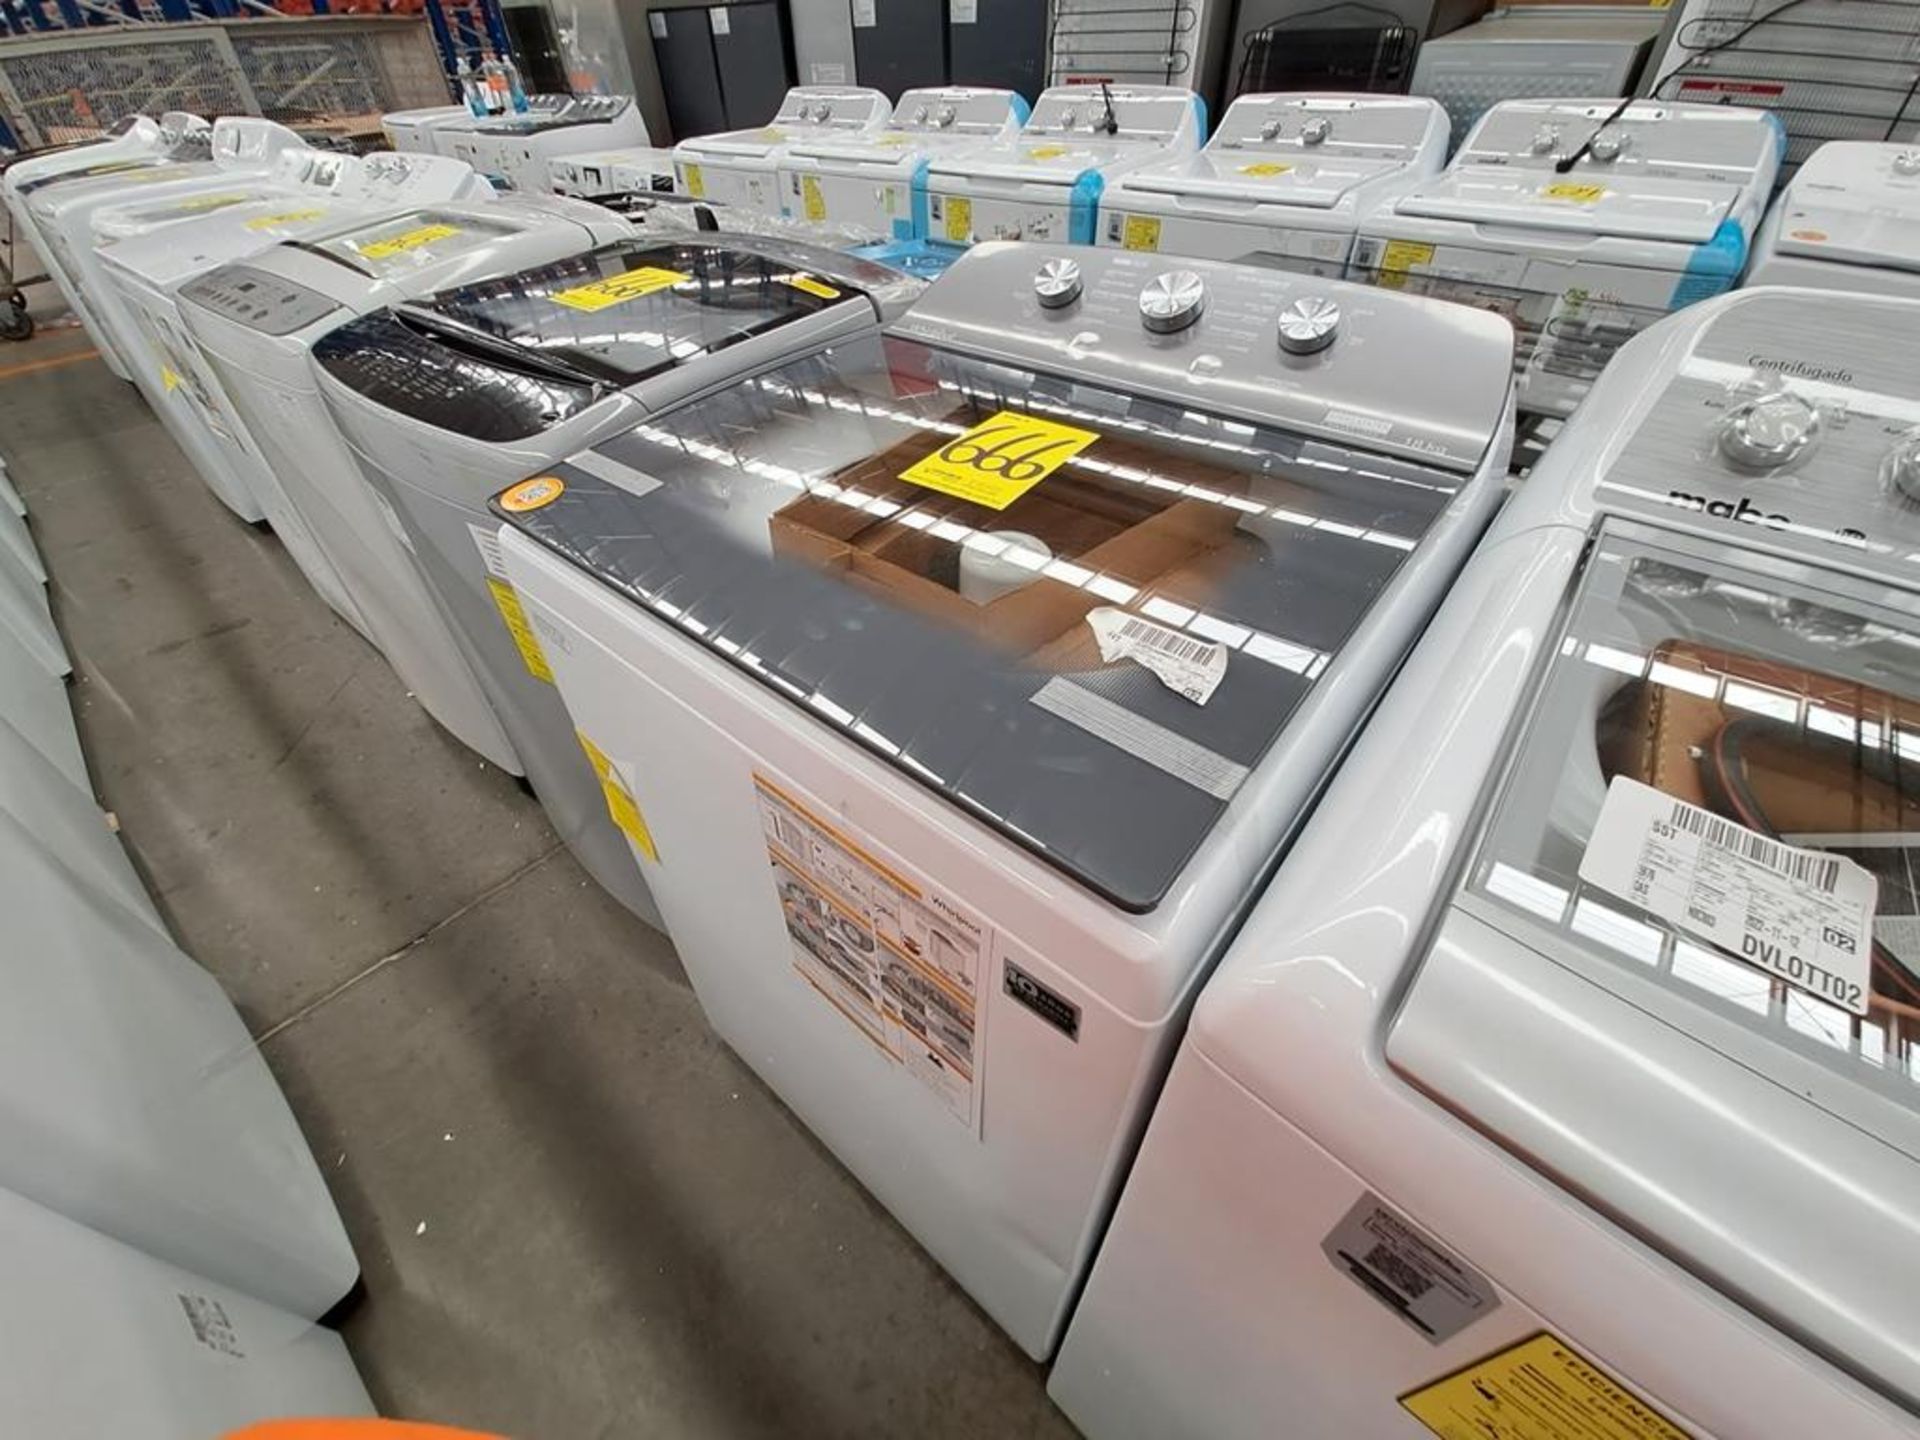 Lote de 2 lavadoras contiene: 1 Lavadora de 18 KG Marca LG, Modelo WT18DS8P, Serie ND, Color GRIS; - Image 3 of 8